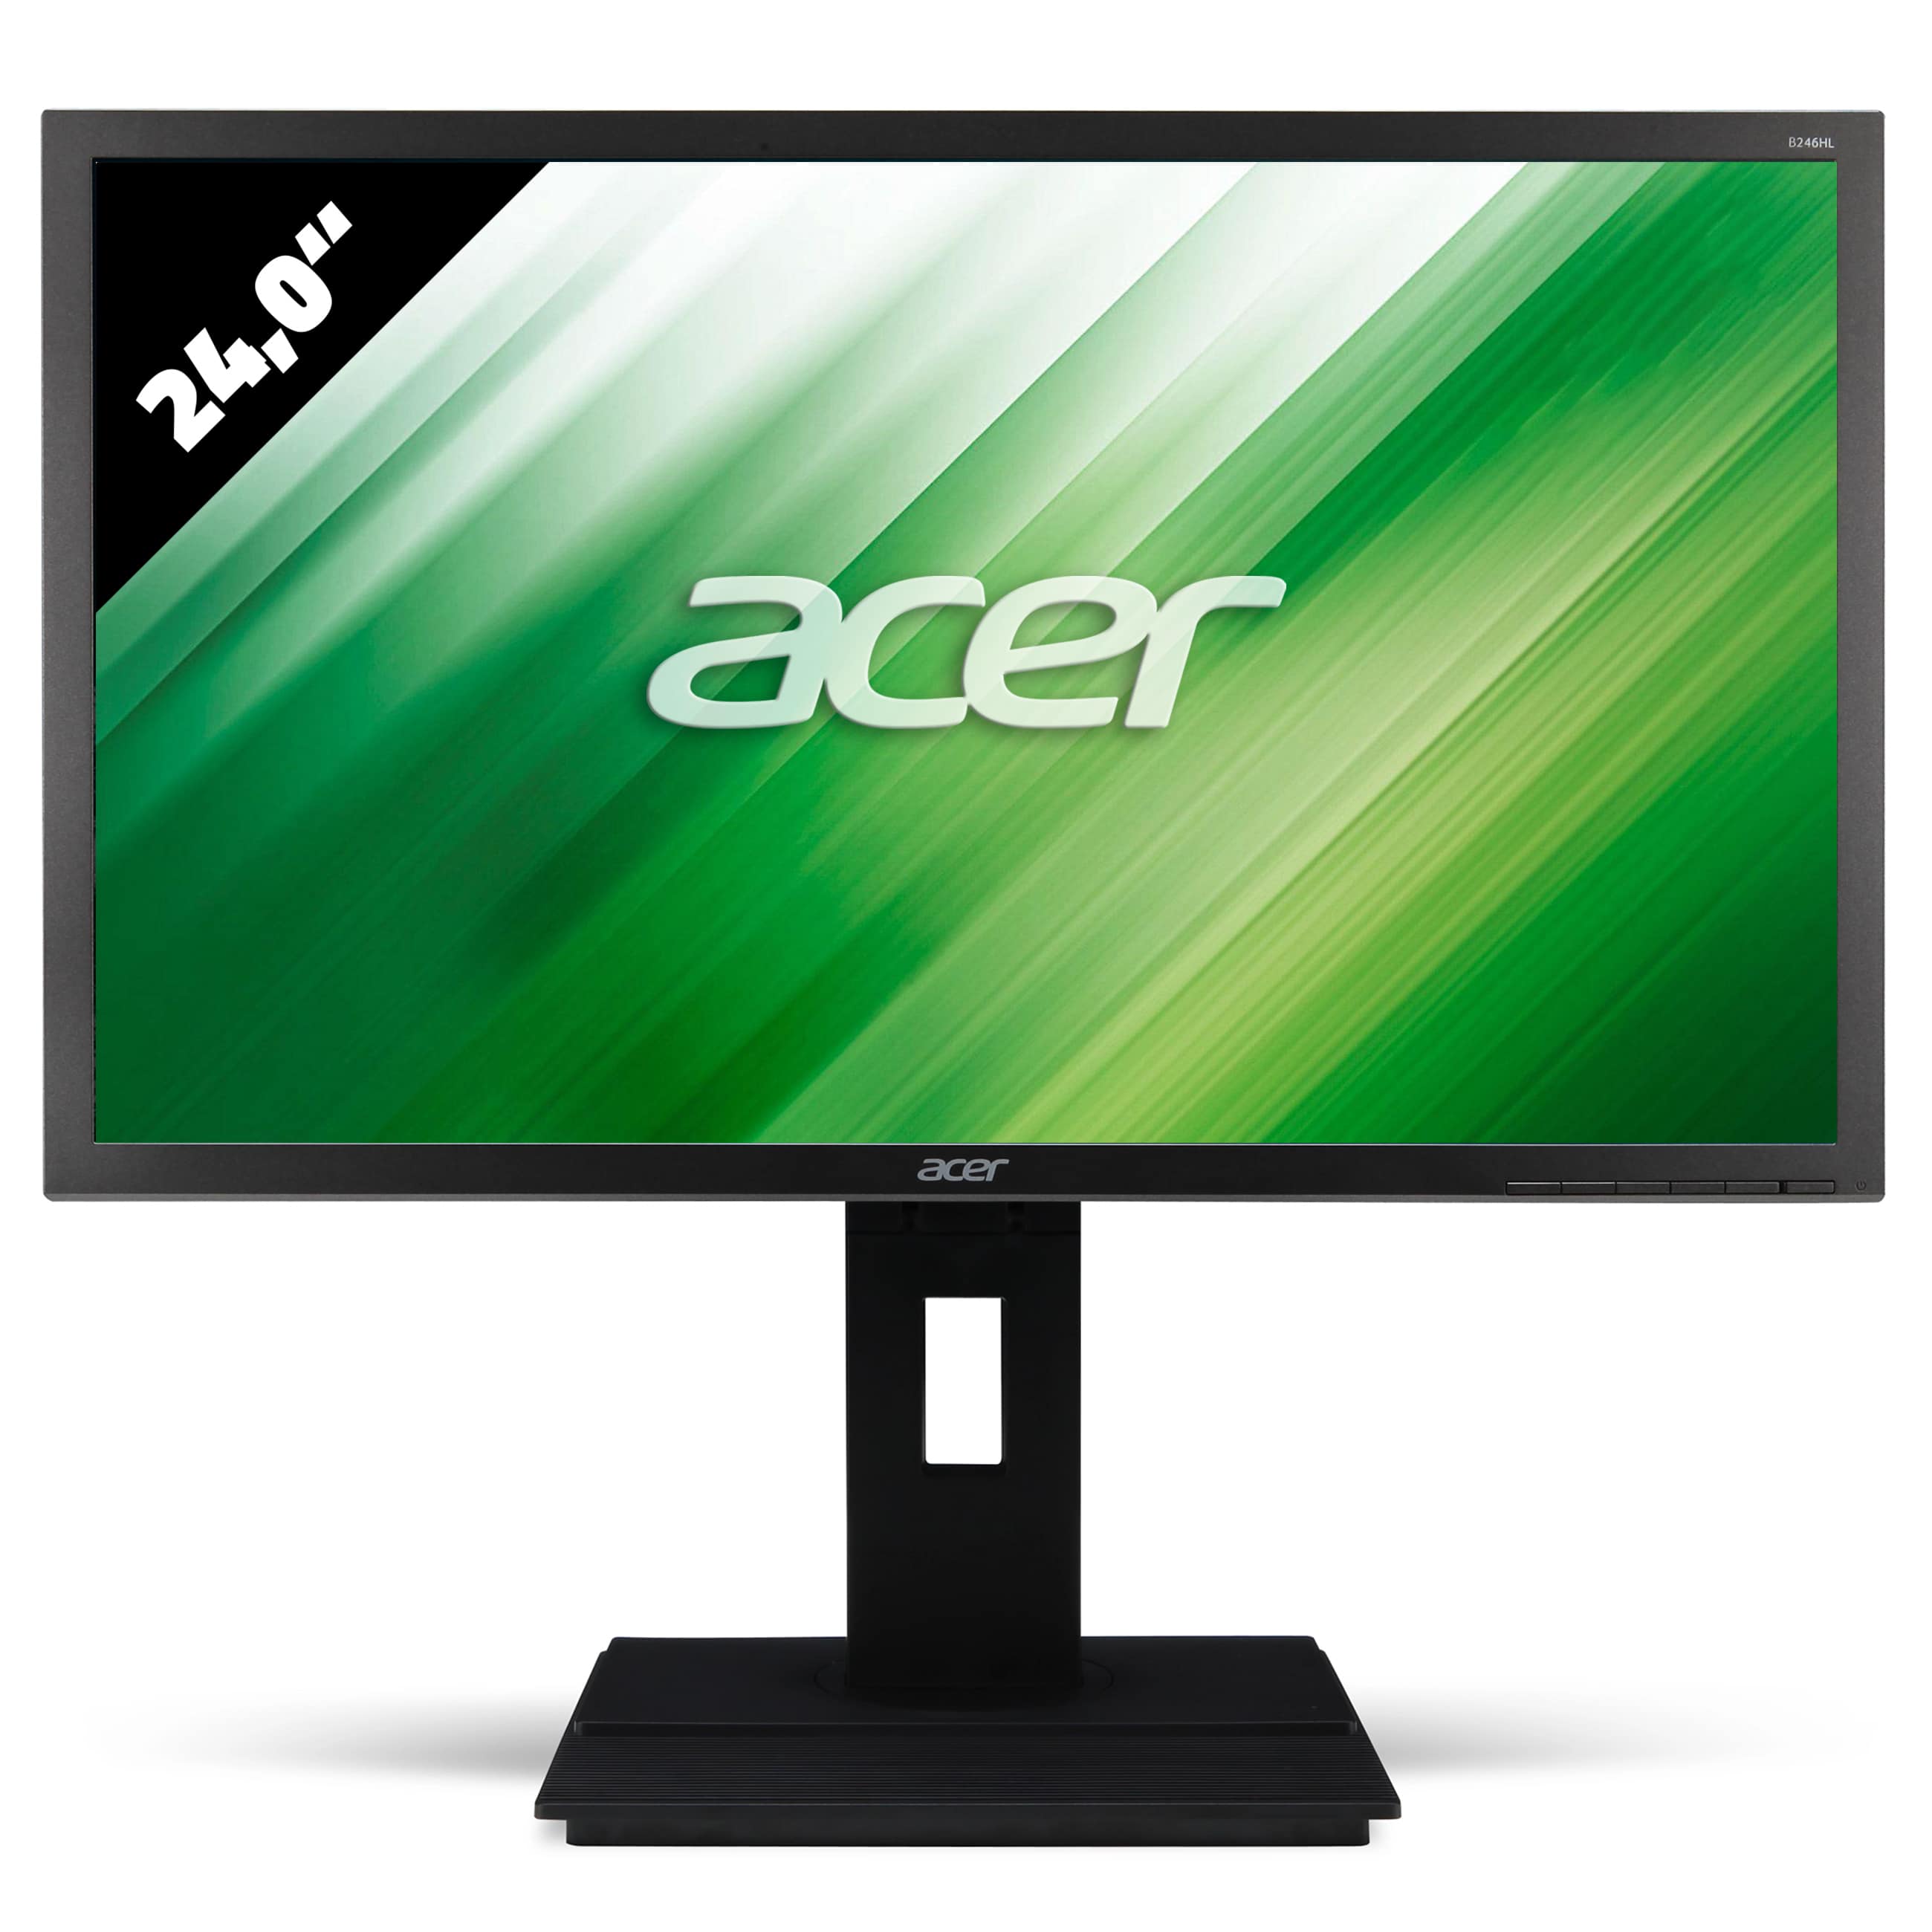 Acer B246HLymdr - 1920 x 1080 - FHD - 24,0 Zoll - 5 ms - Schwarz